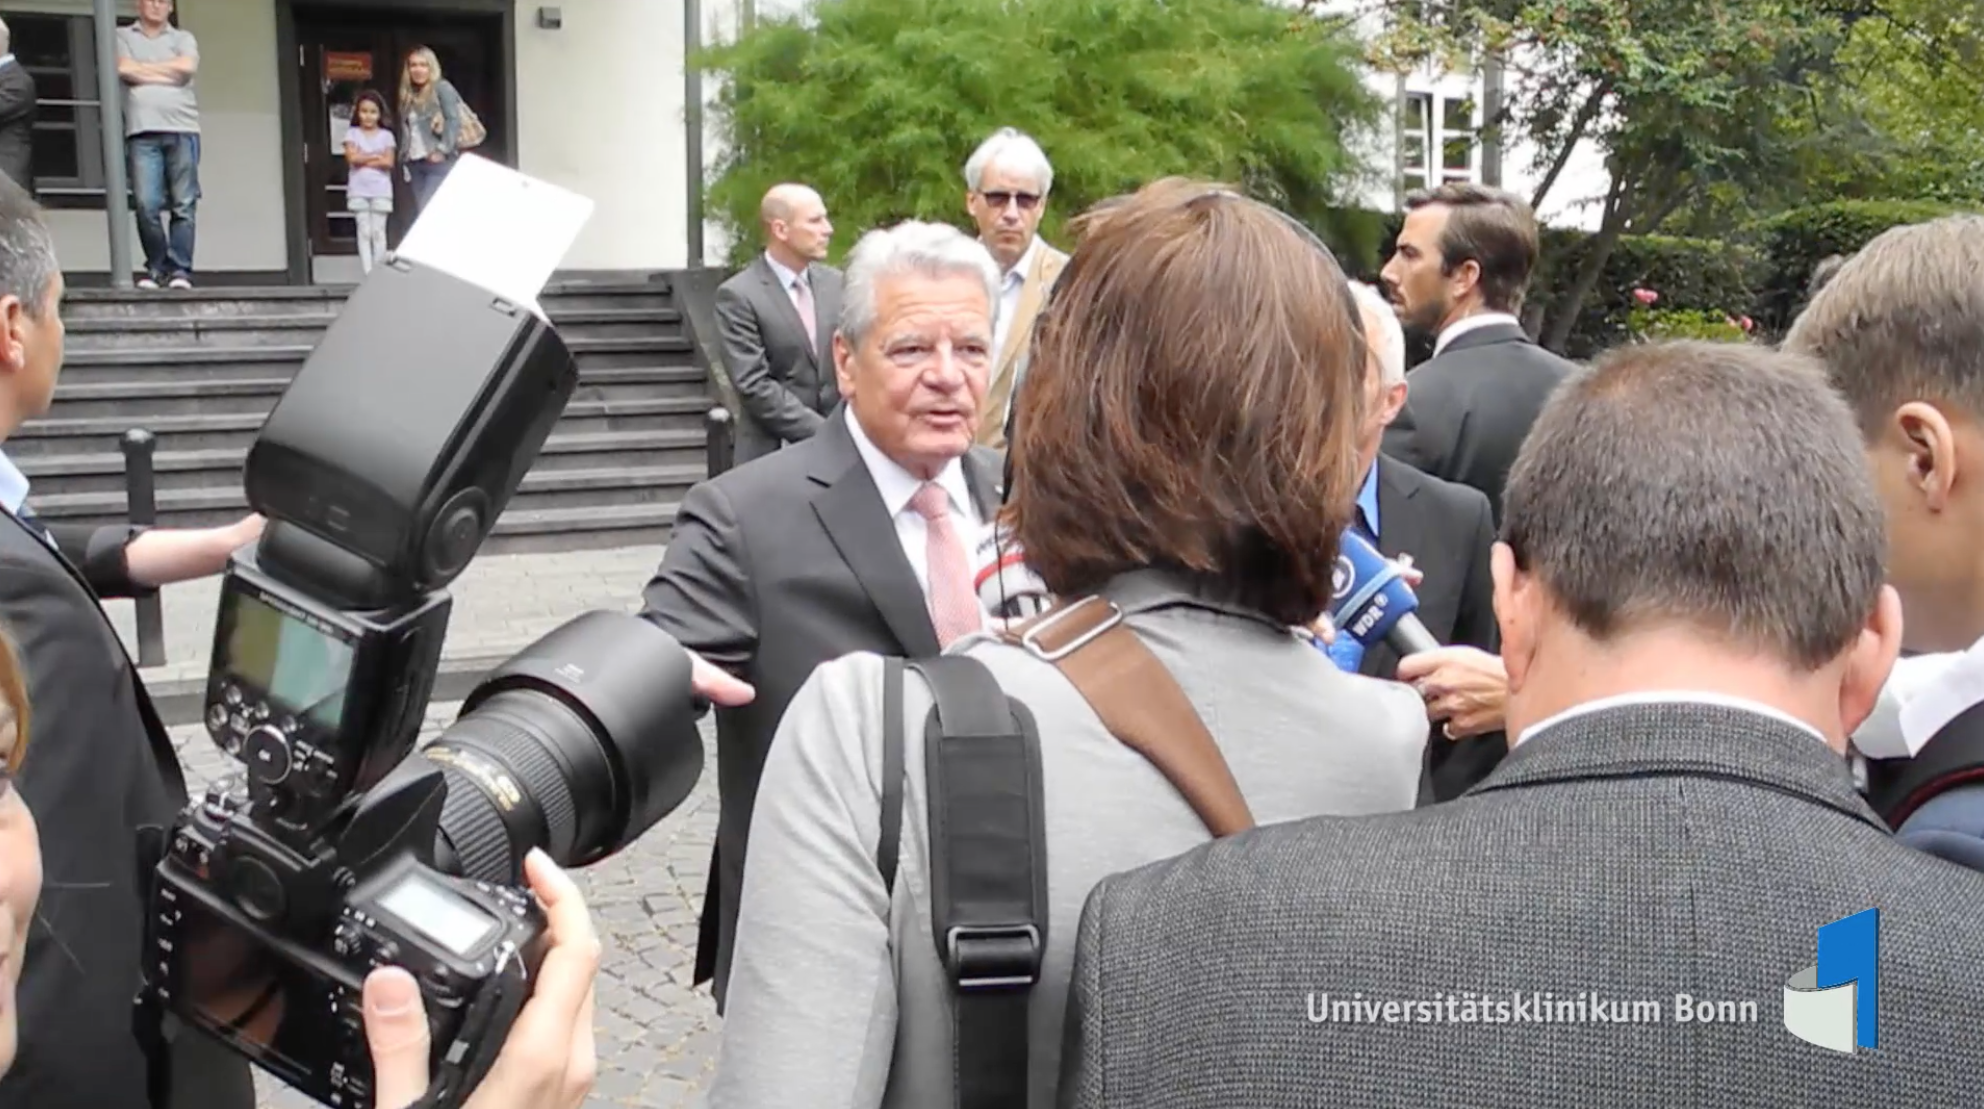 Bundespräsident Gauck besucht gemeinsam mit seiner Lebensgefährtin Daniela Schadt die Kinderklinik des Universitätsklinikums Bonn